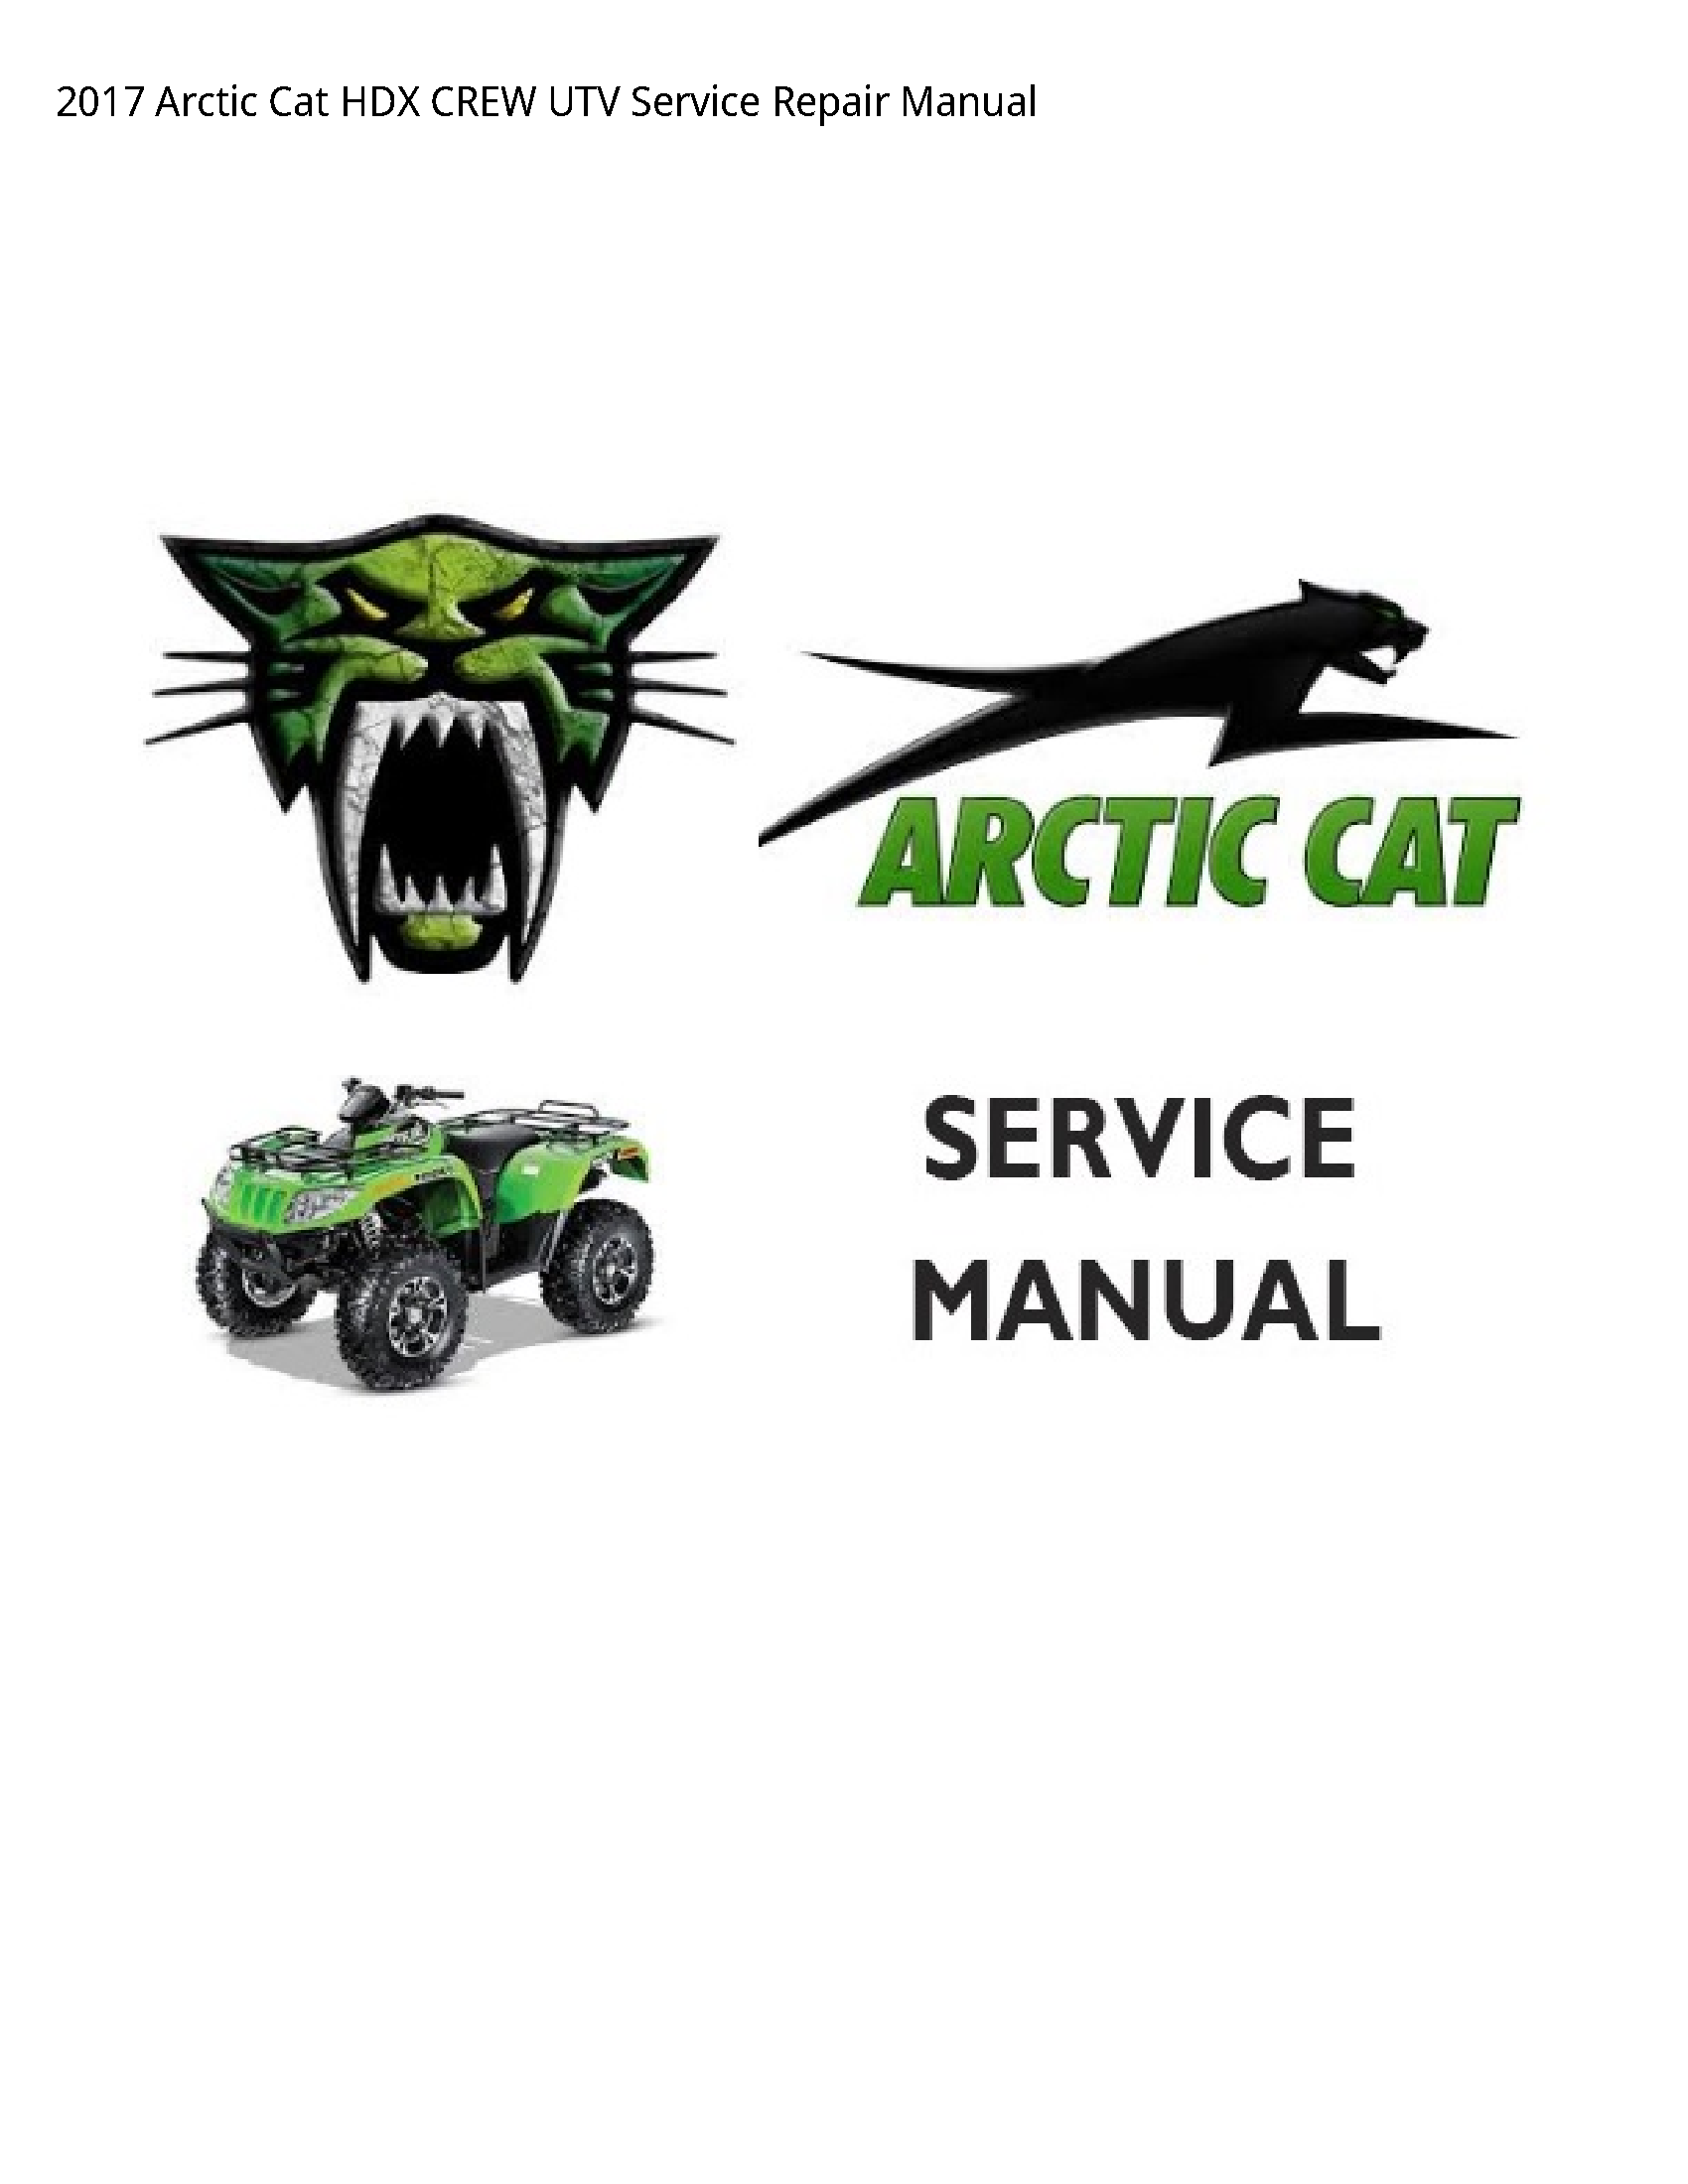 Arctic Cat HDX CREW UTV manual